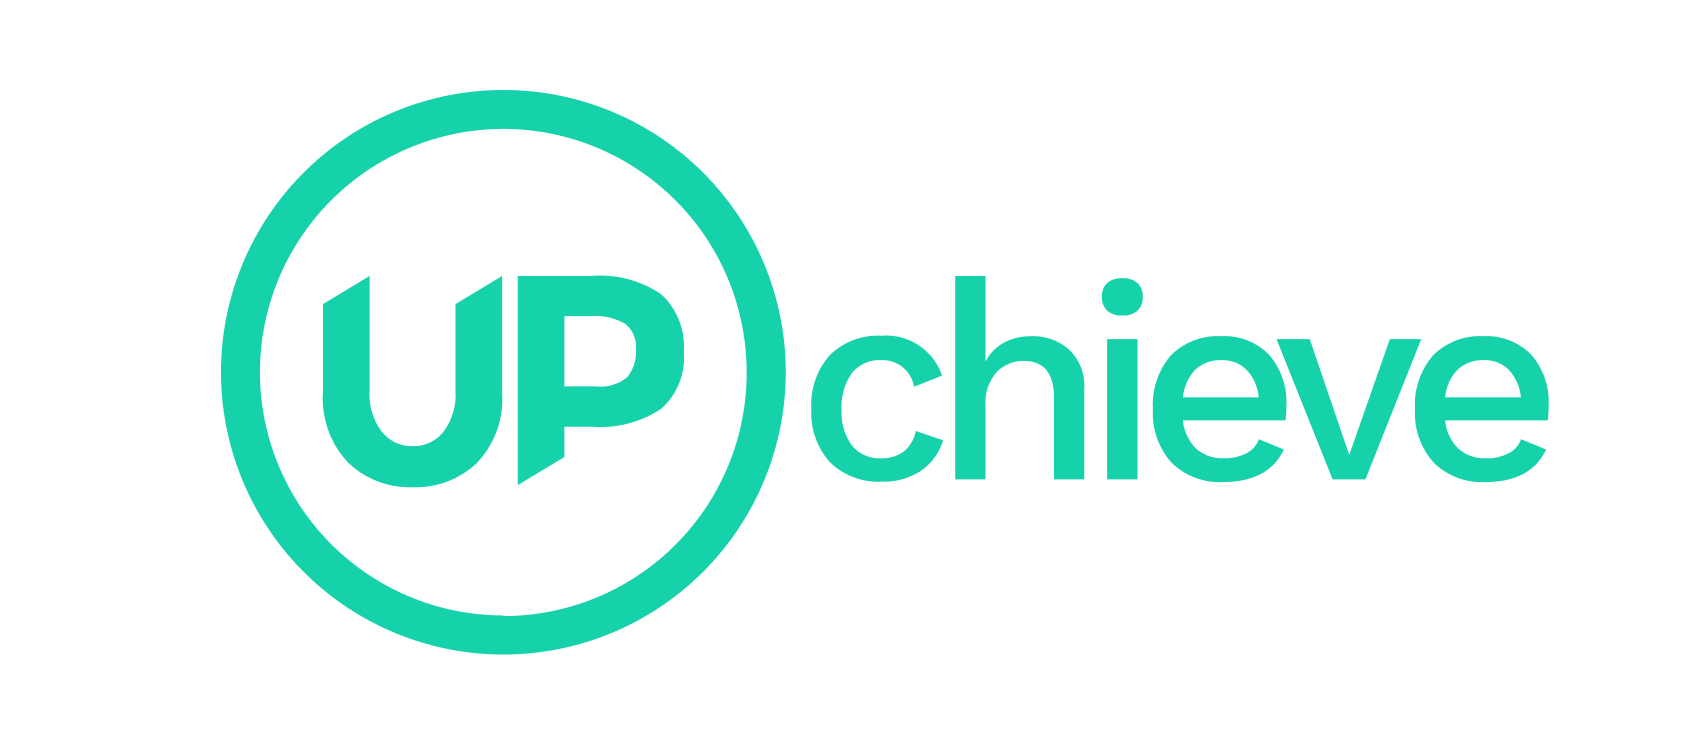 UPcheive logo